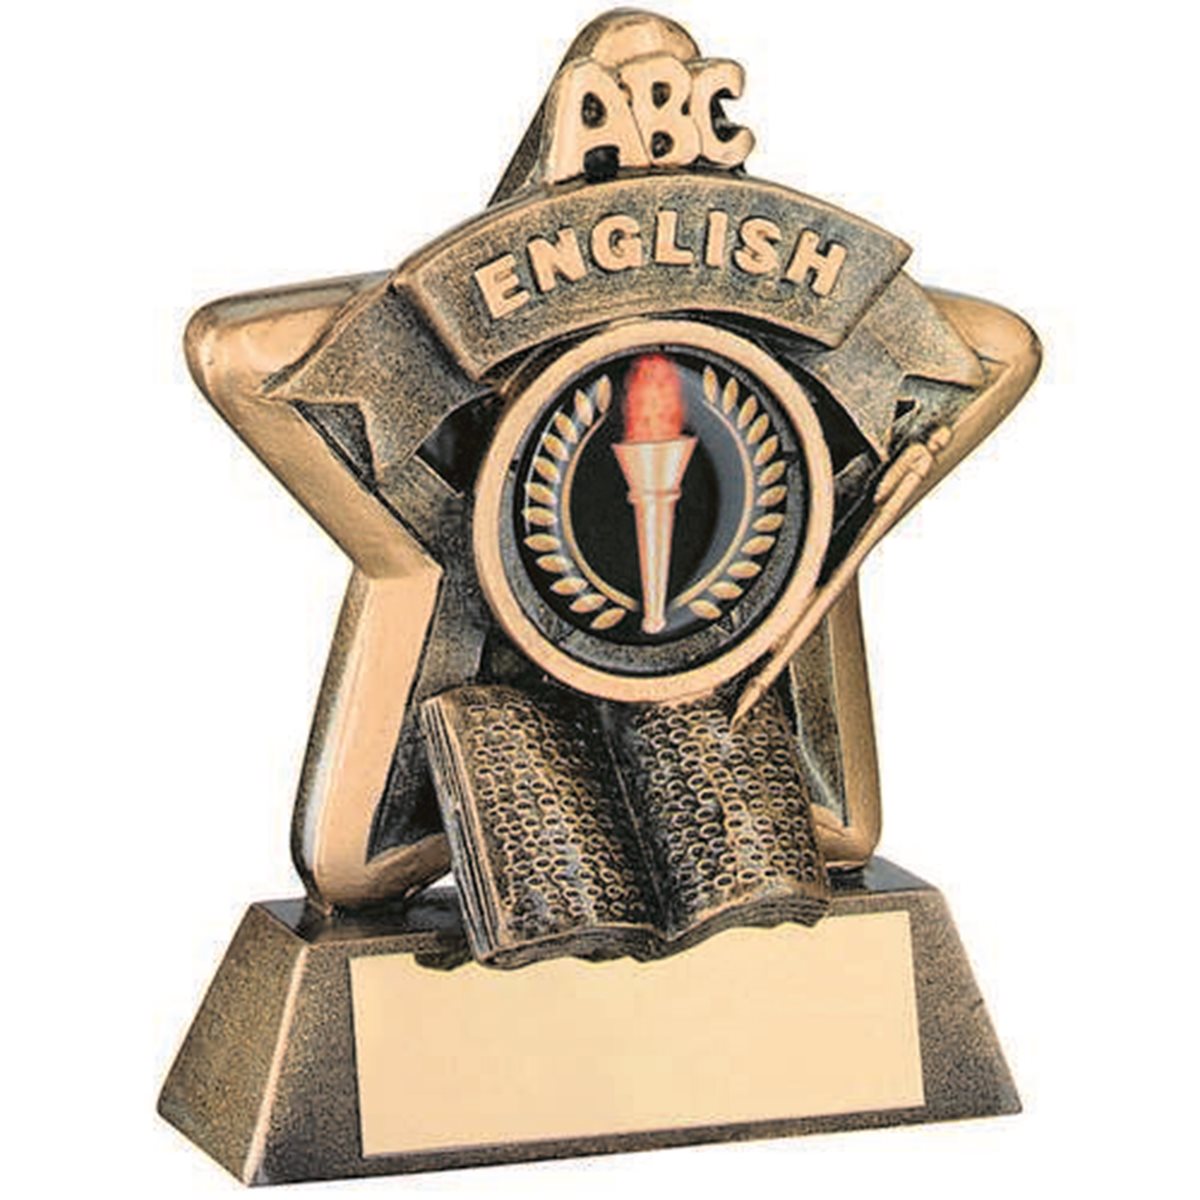 English Star Resin Award JR44-RF407